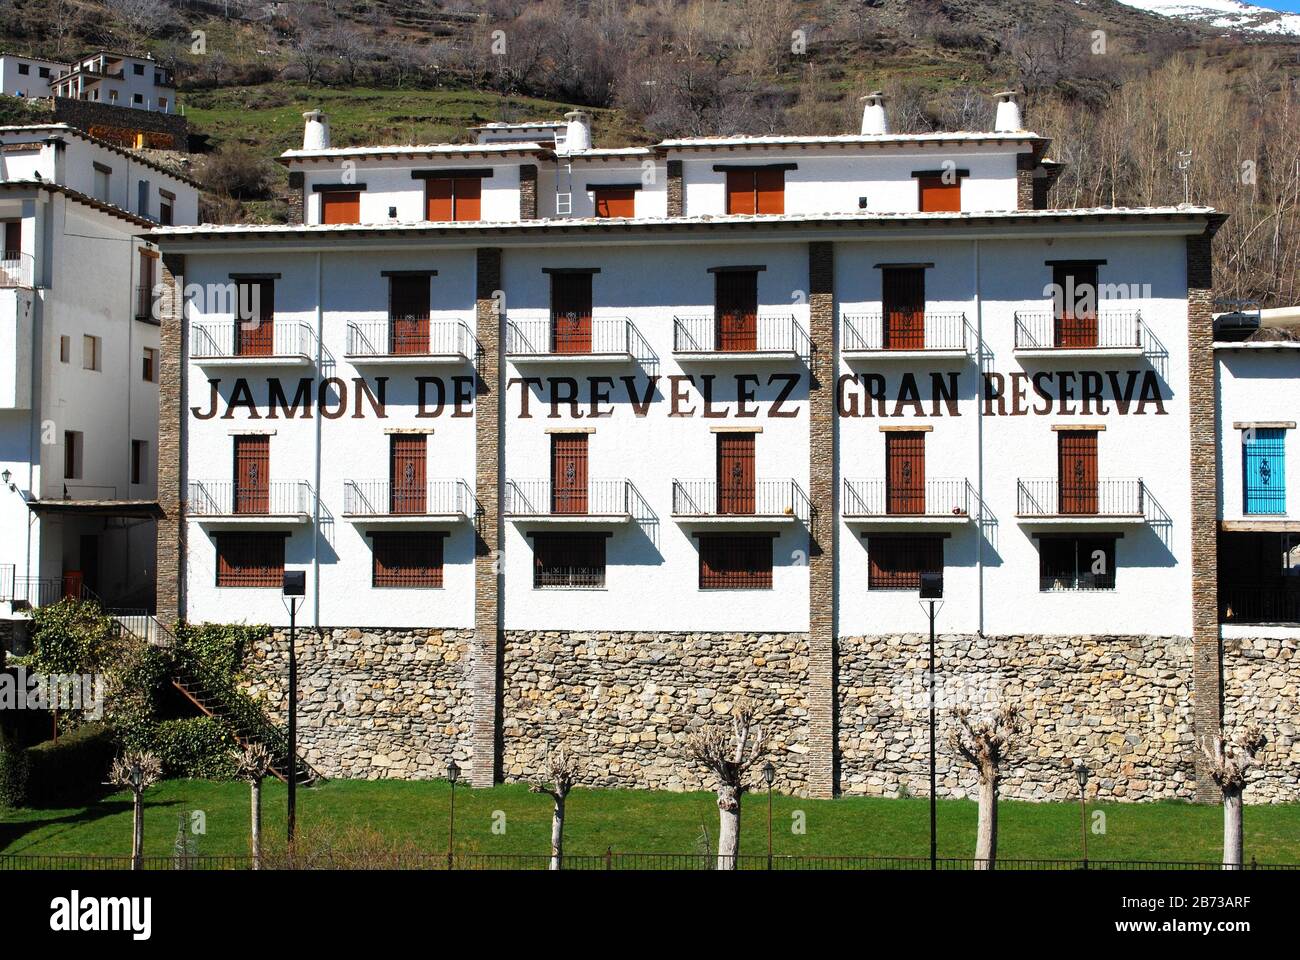 Hotel sopra le rive del fiume Trevelez, villaggio imbiancato (pueblo blanco), Trevelez, Spagna. Foto Stock